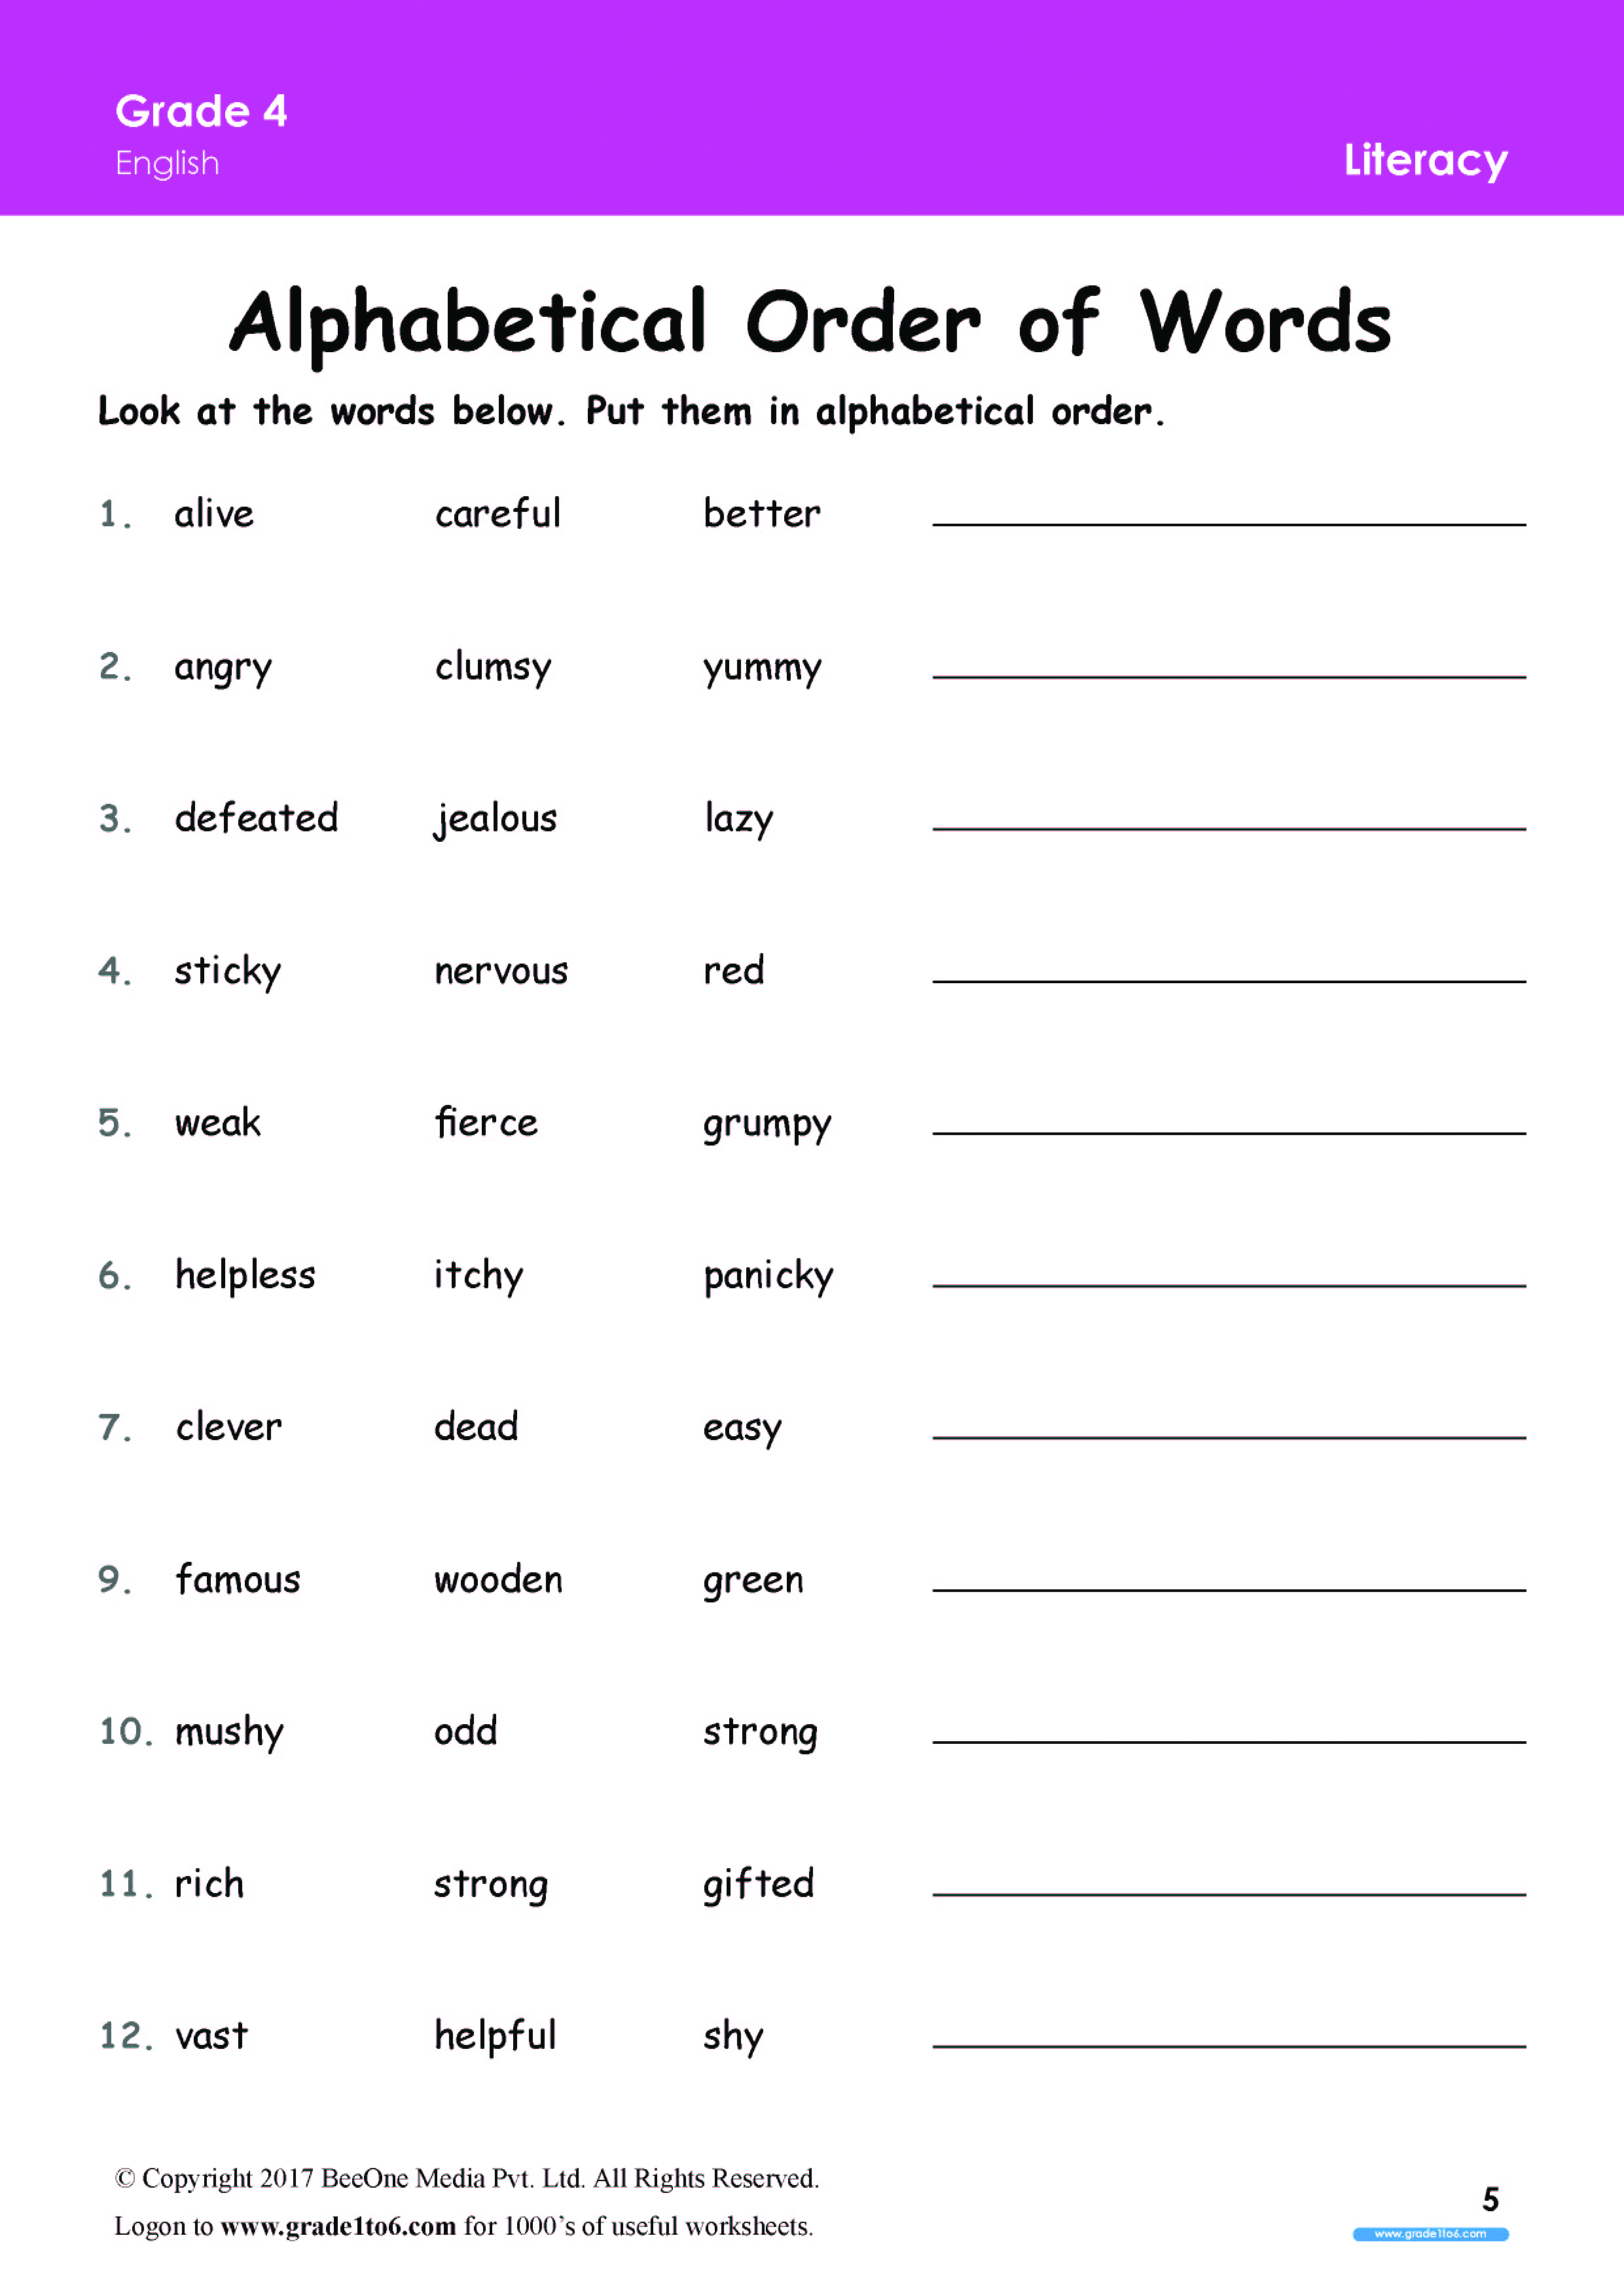 alphabetical-order-words-worksheet